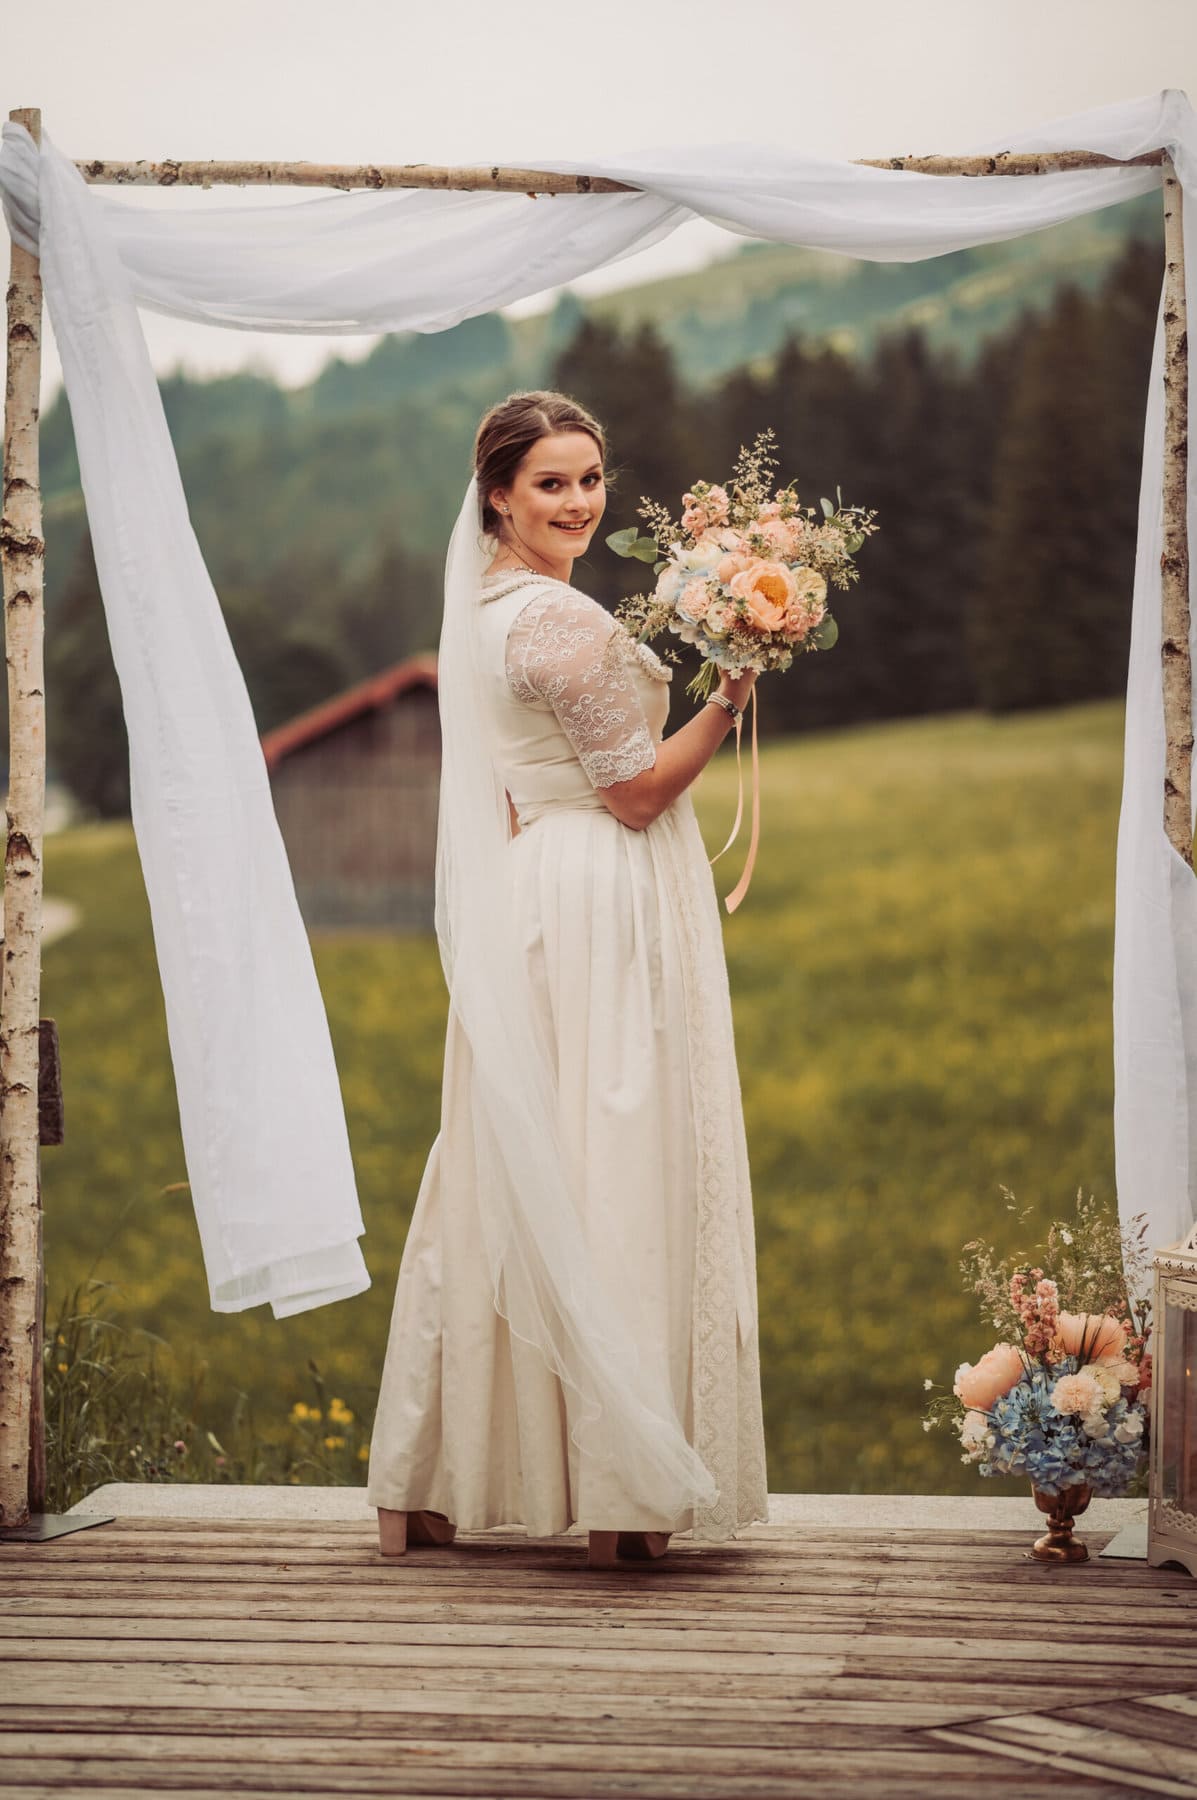 Die Trauung auf der Meckatzer Sportalp. Die Braut mit ihrem Brautstrauß in der Hand unter dem Bogen.